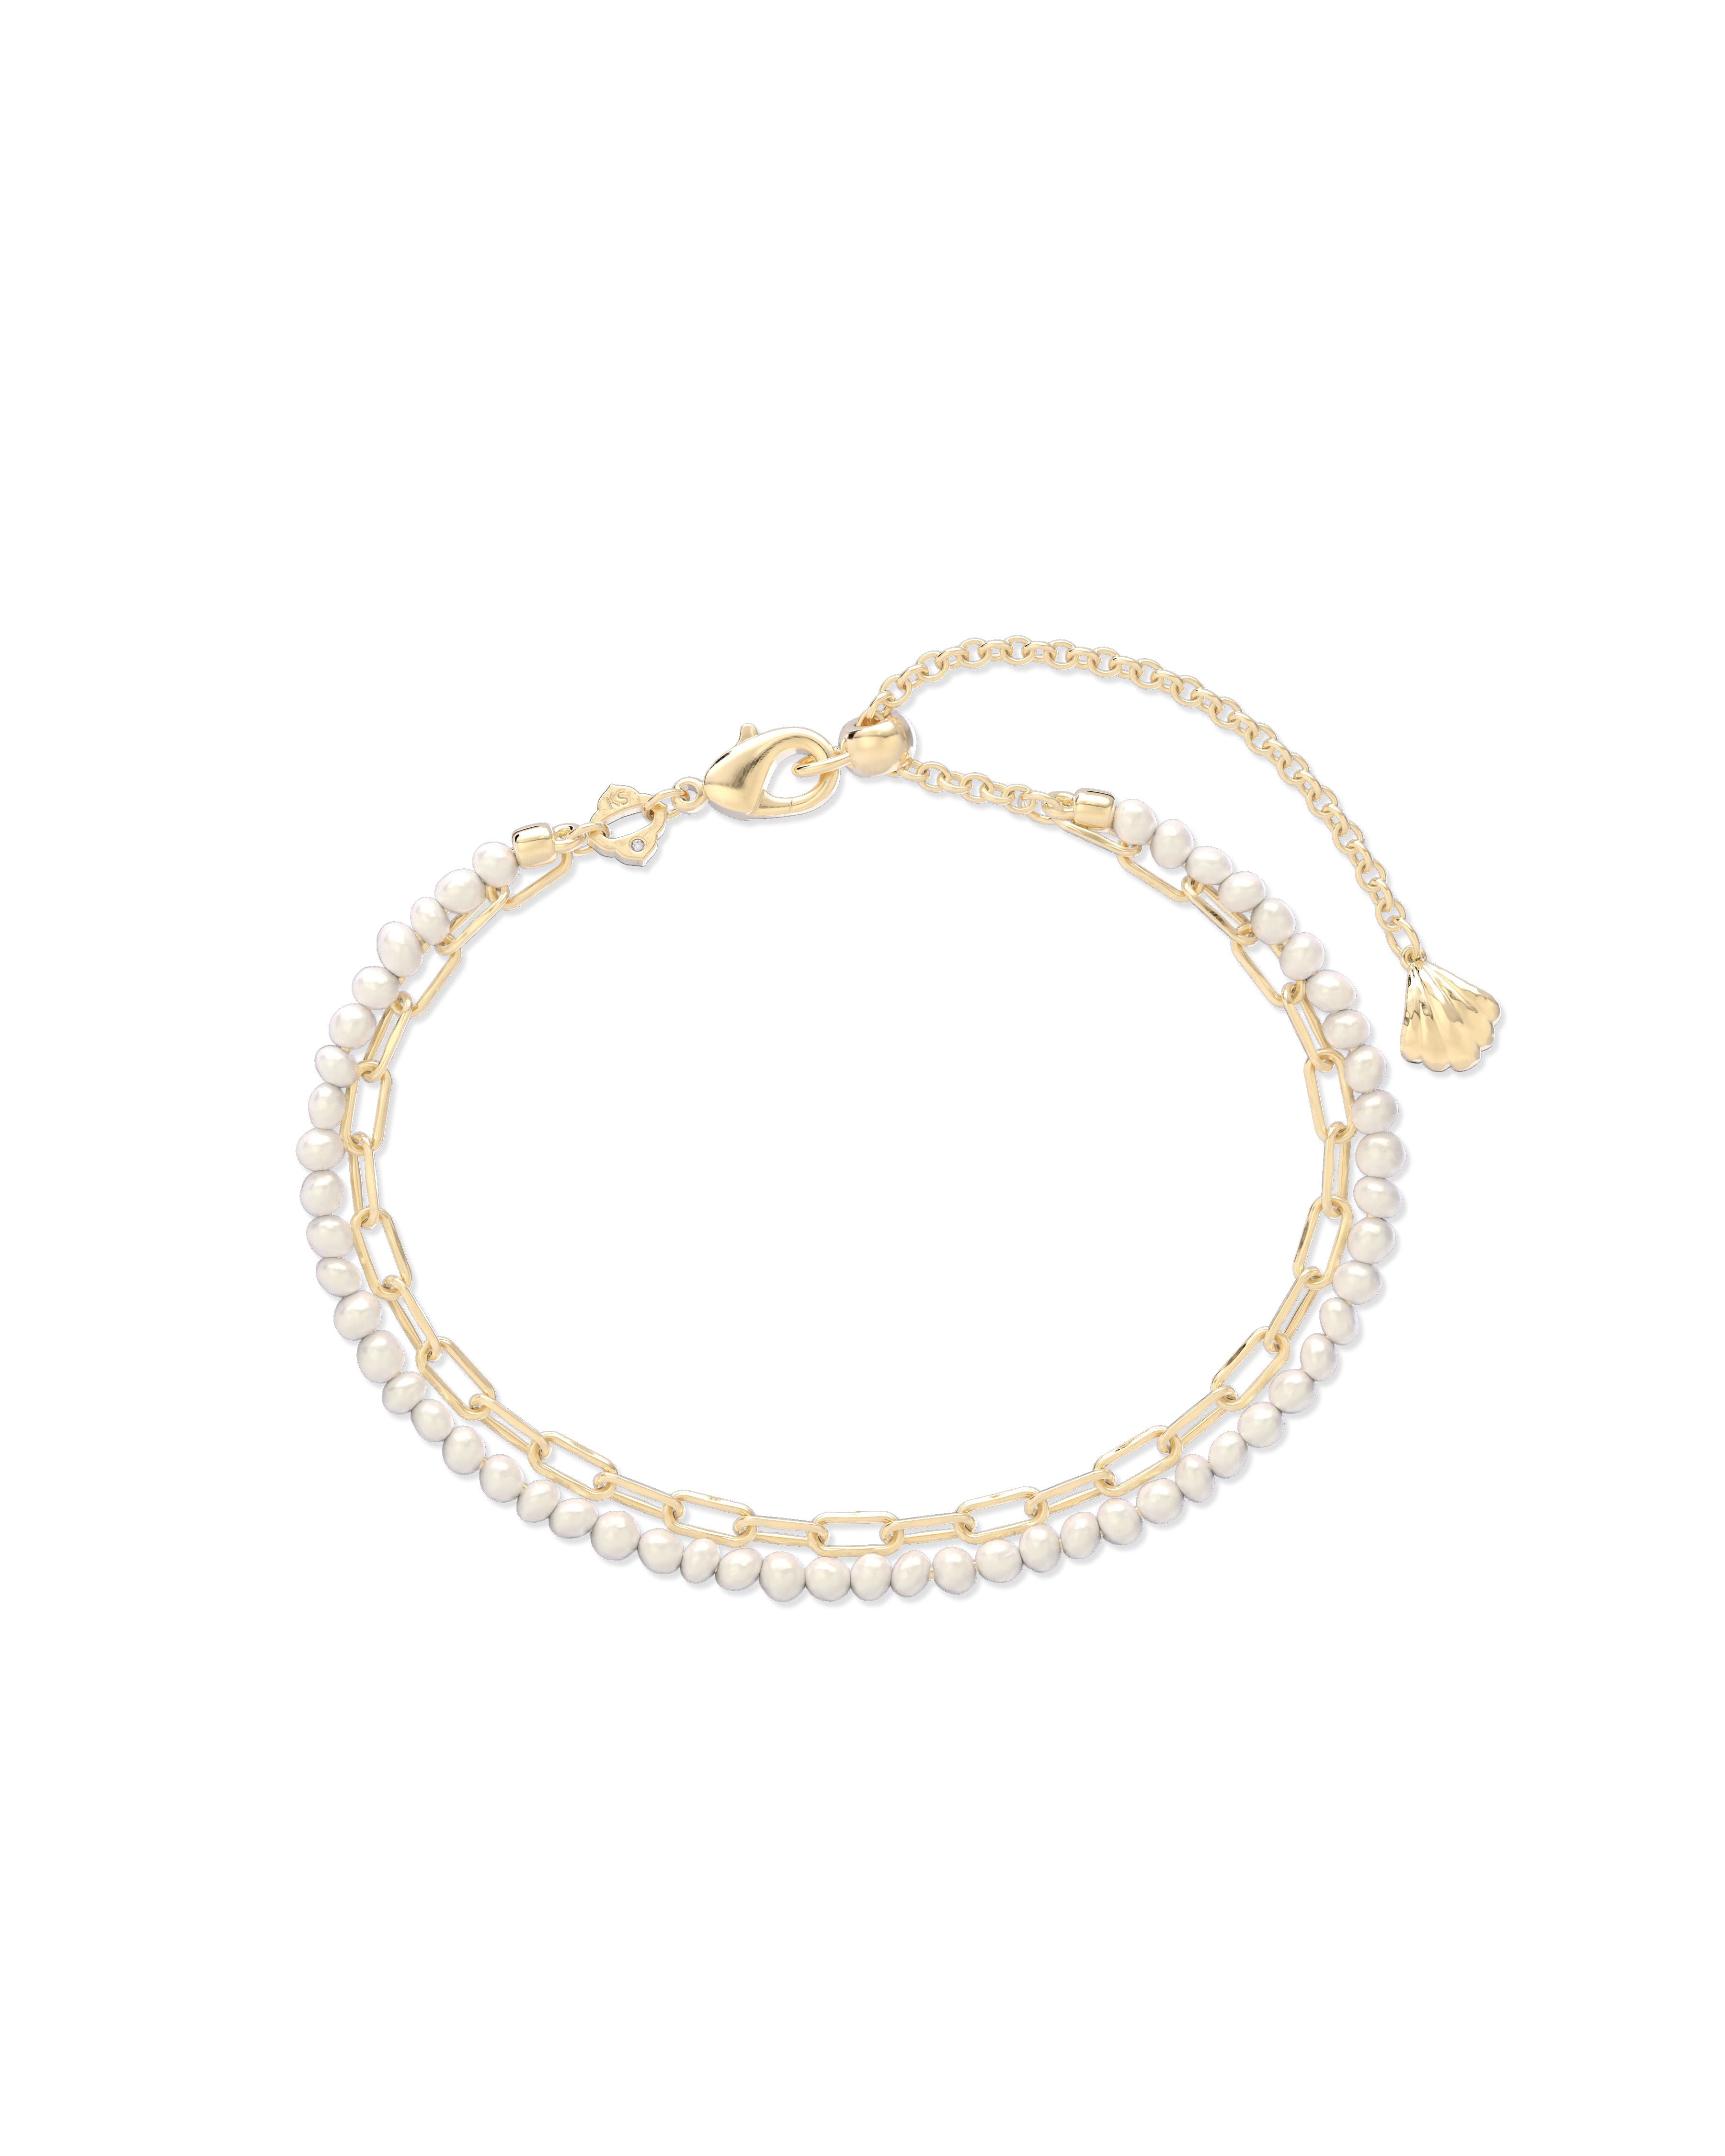 Lolo Multi Strand Bracelet in Gold White Pearl